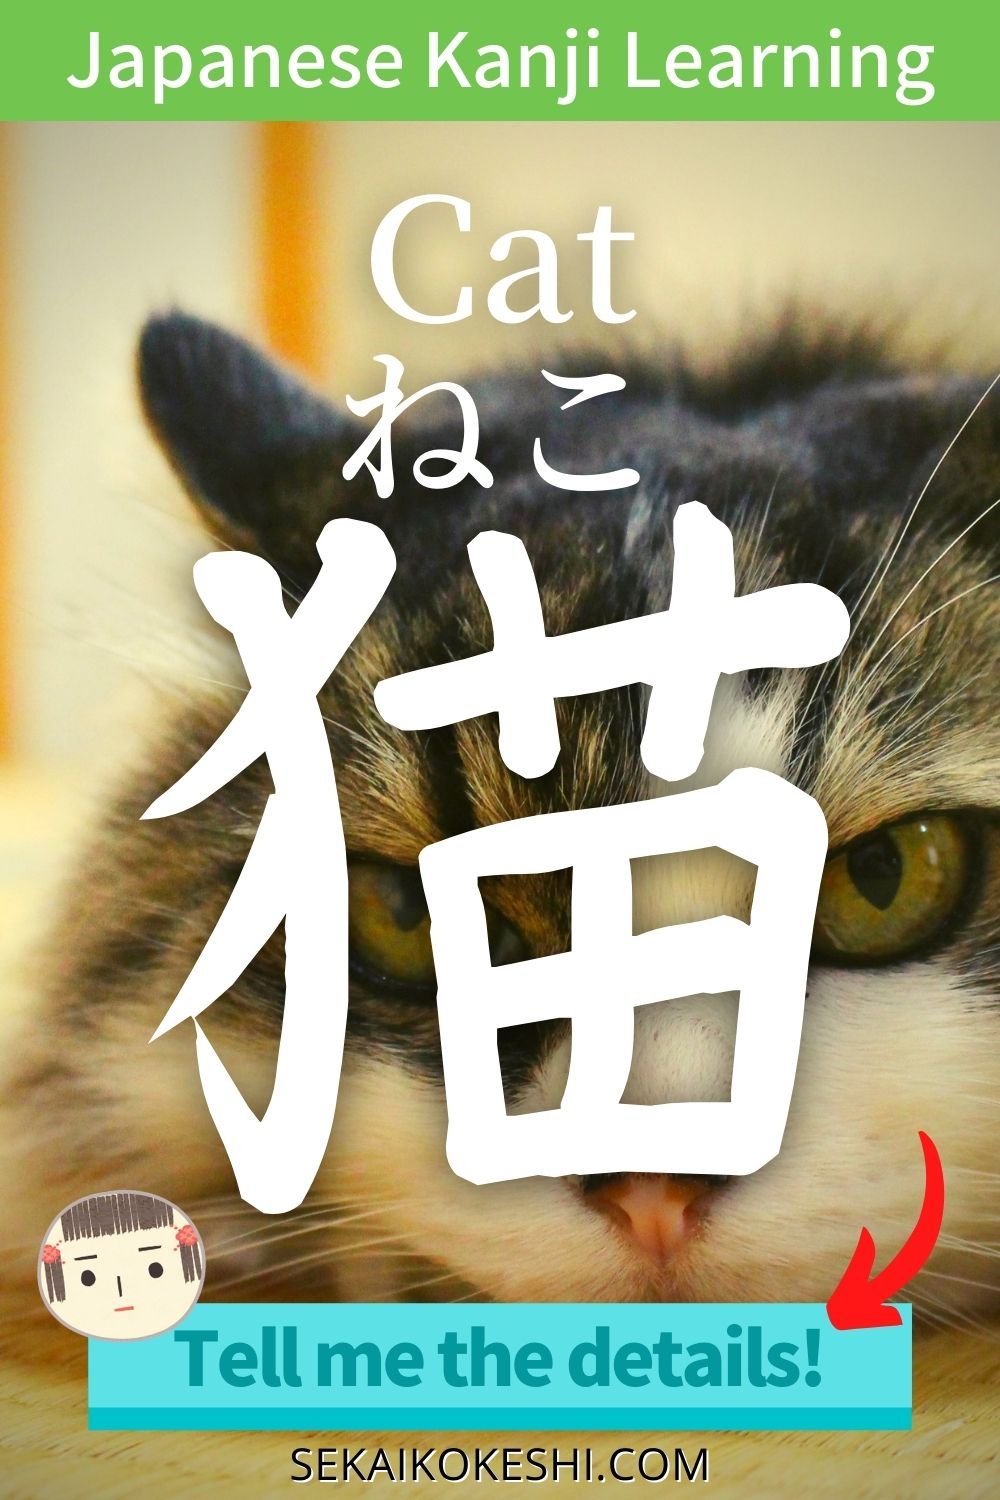 일본어로 ‘고양이’라고 말하는 방법